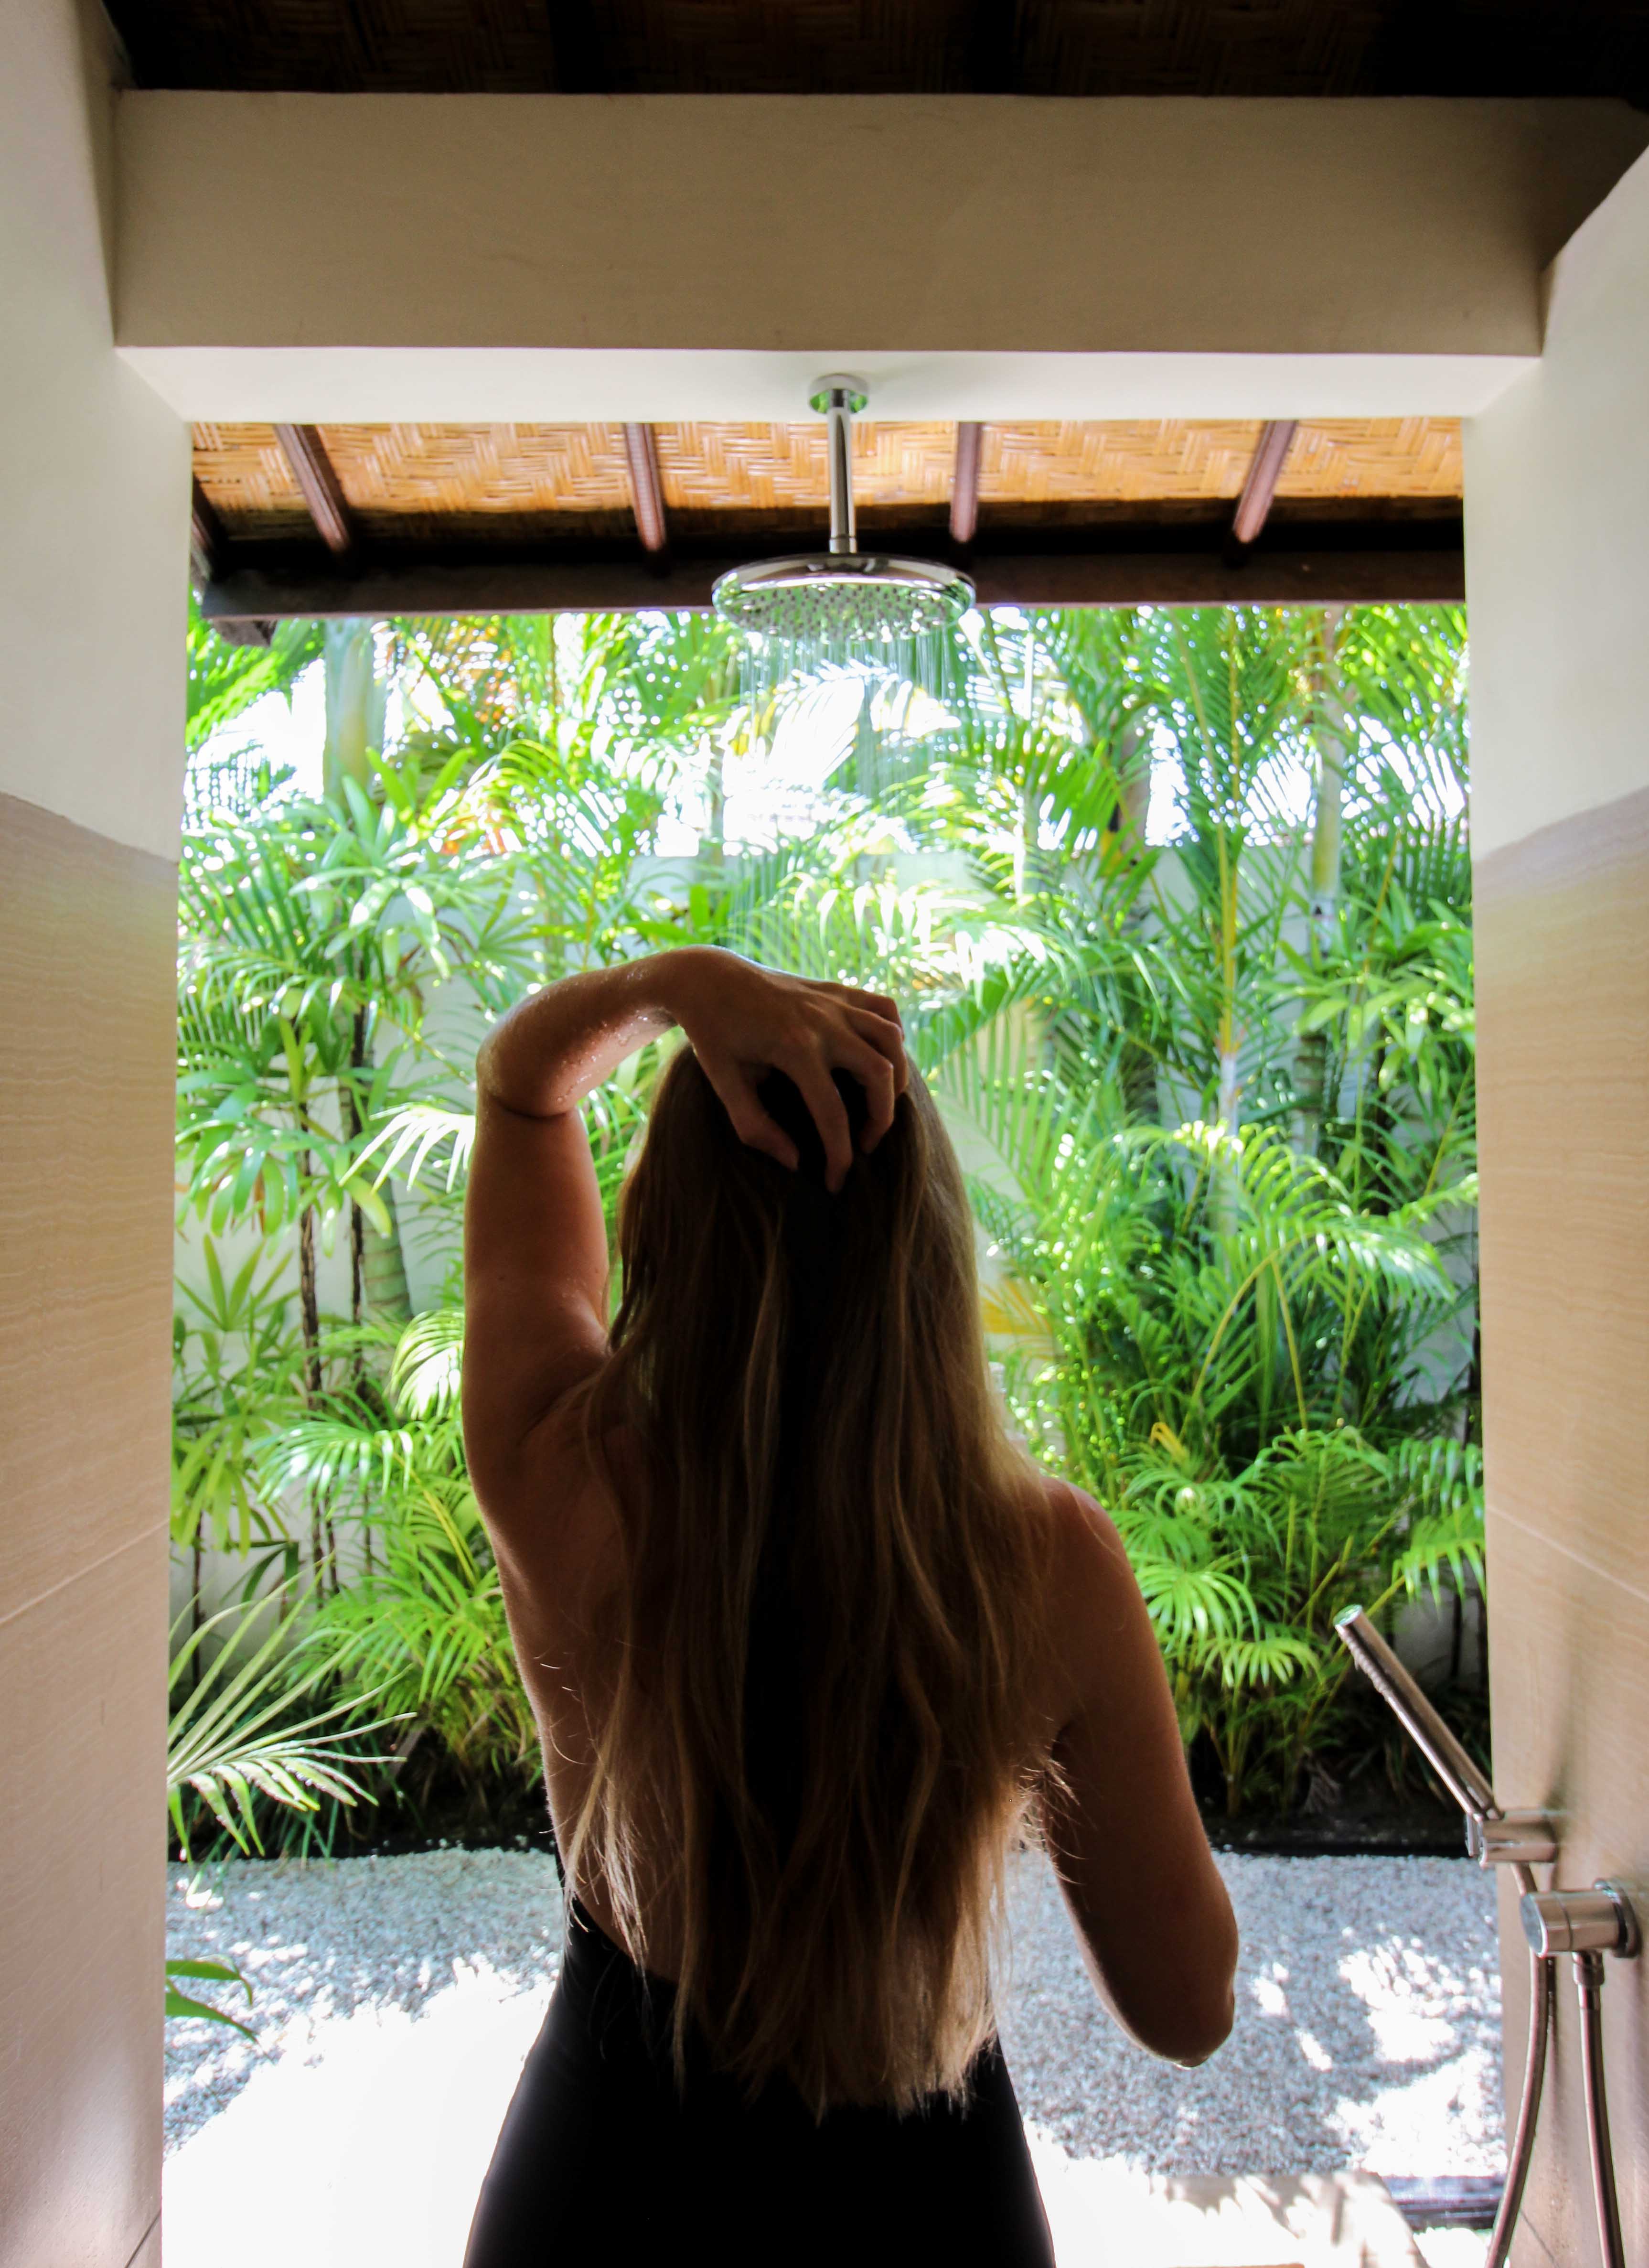 Haarpflege Halier Fortesse Shampoo Conditioner Test gesundes kräftiges Haar Beauty Blog Bali Dusche Villa